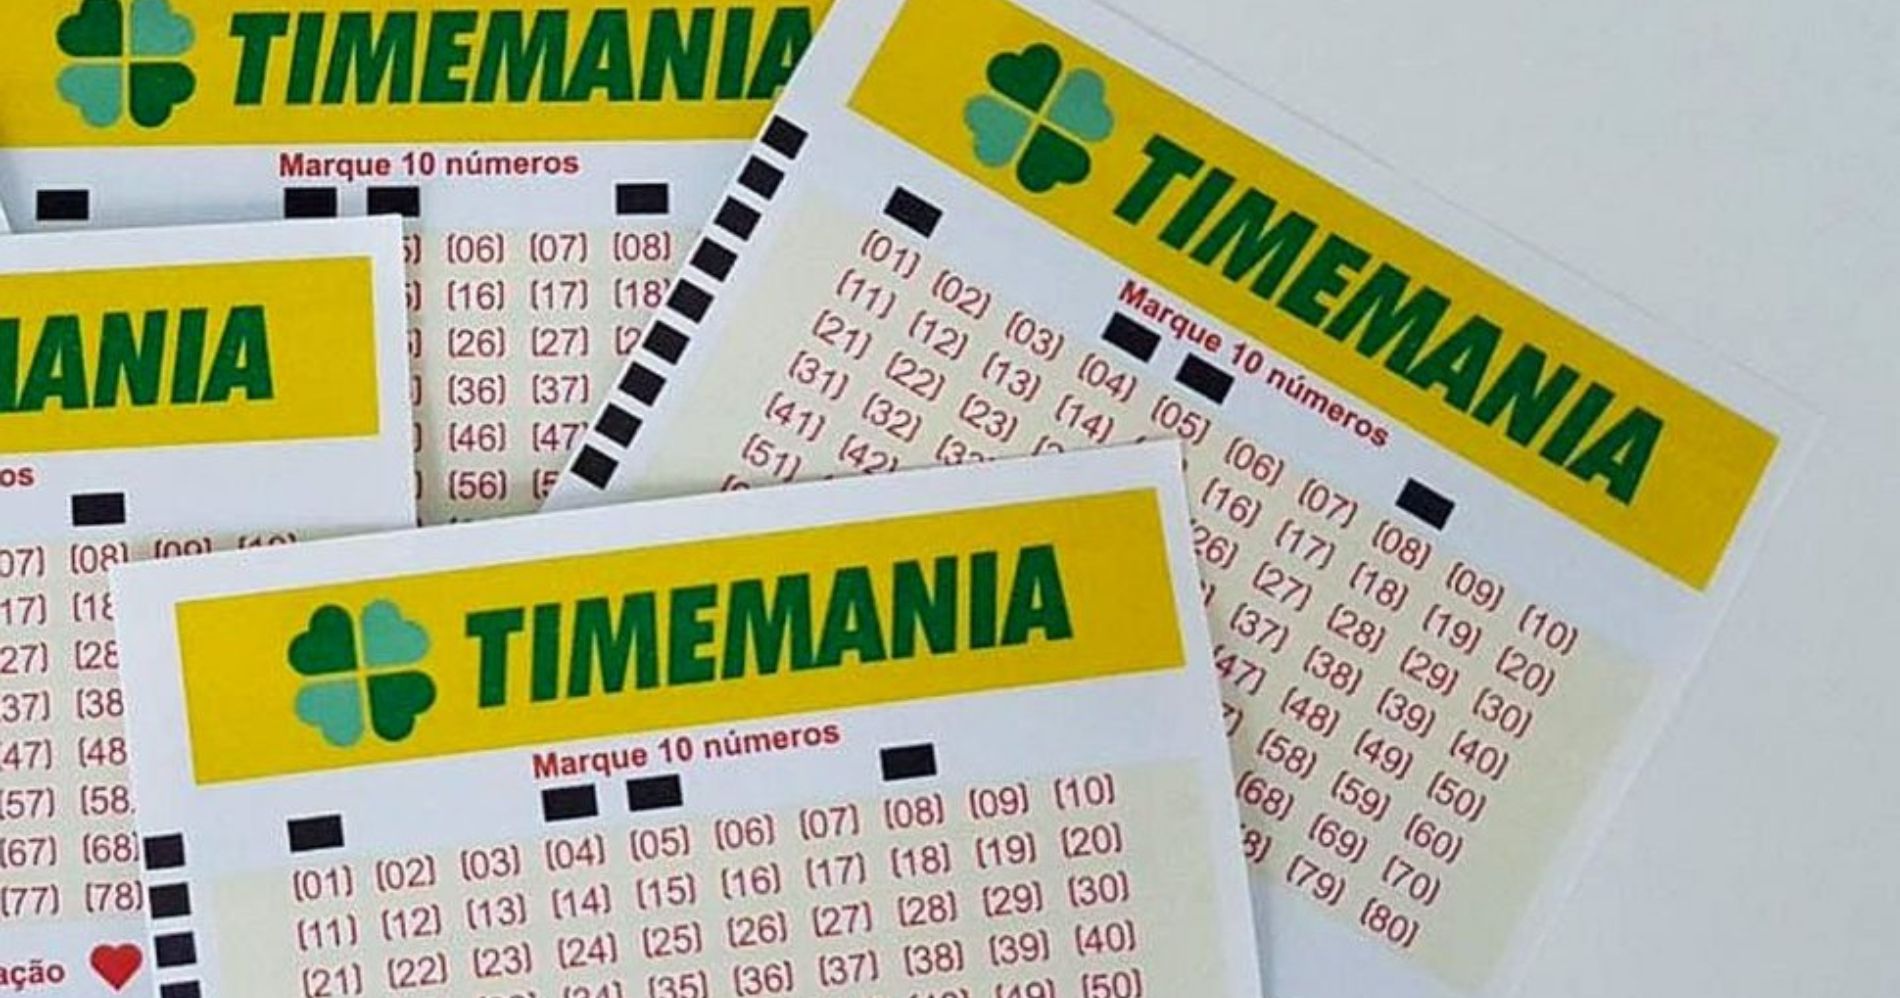 Timemania 1980: prêmio de R$ 8,1 Milhões acumula após sorteio